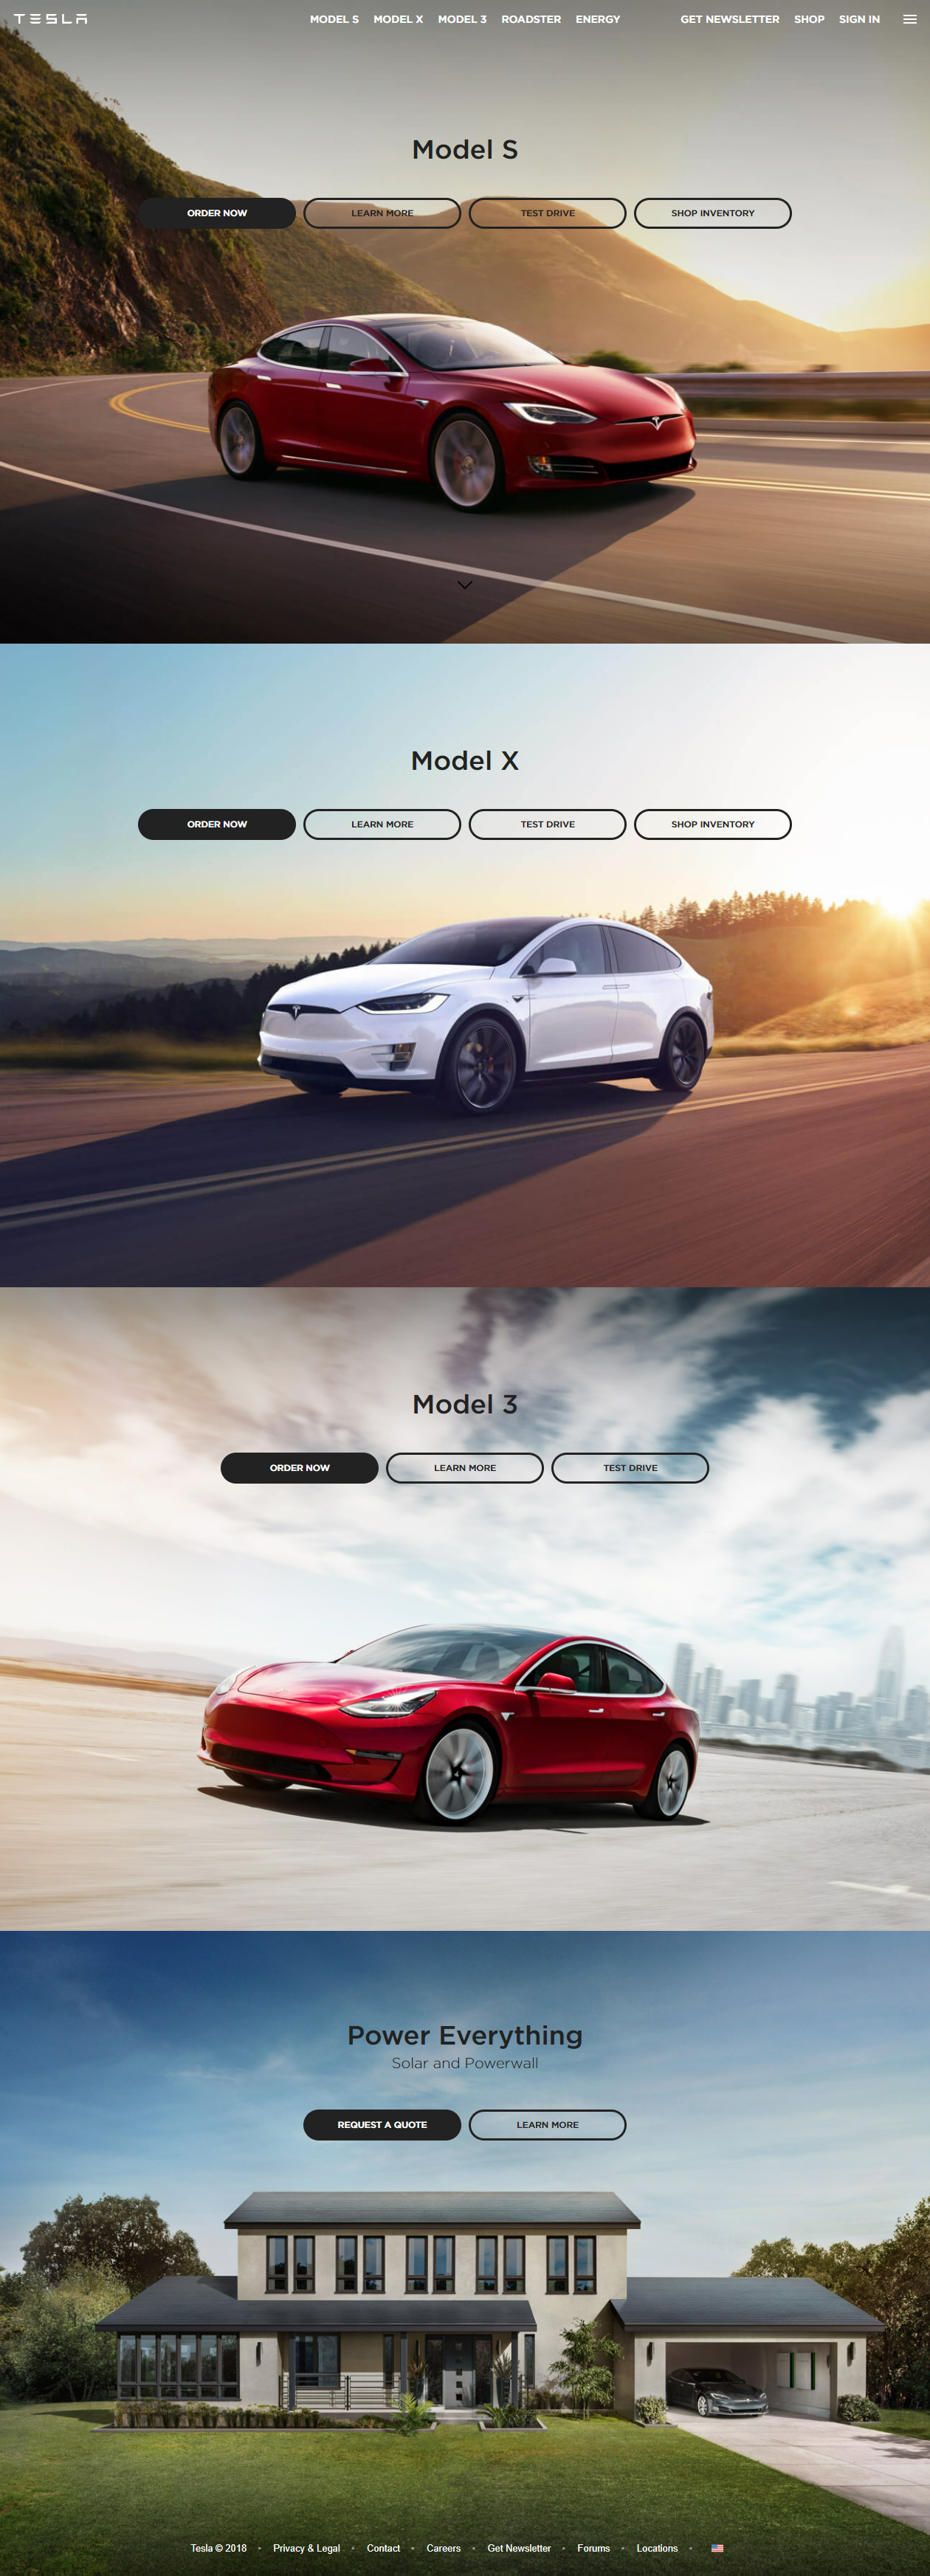 Tesla website in 2018